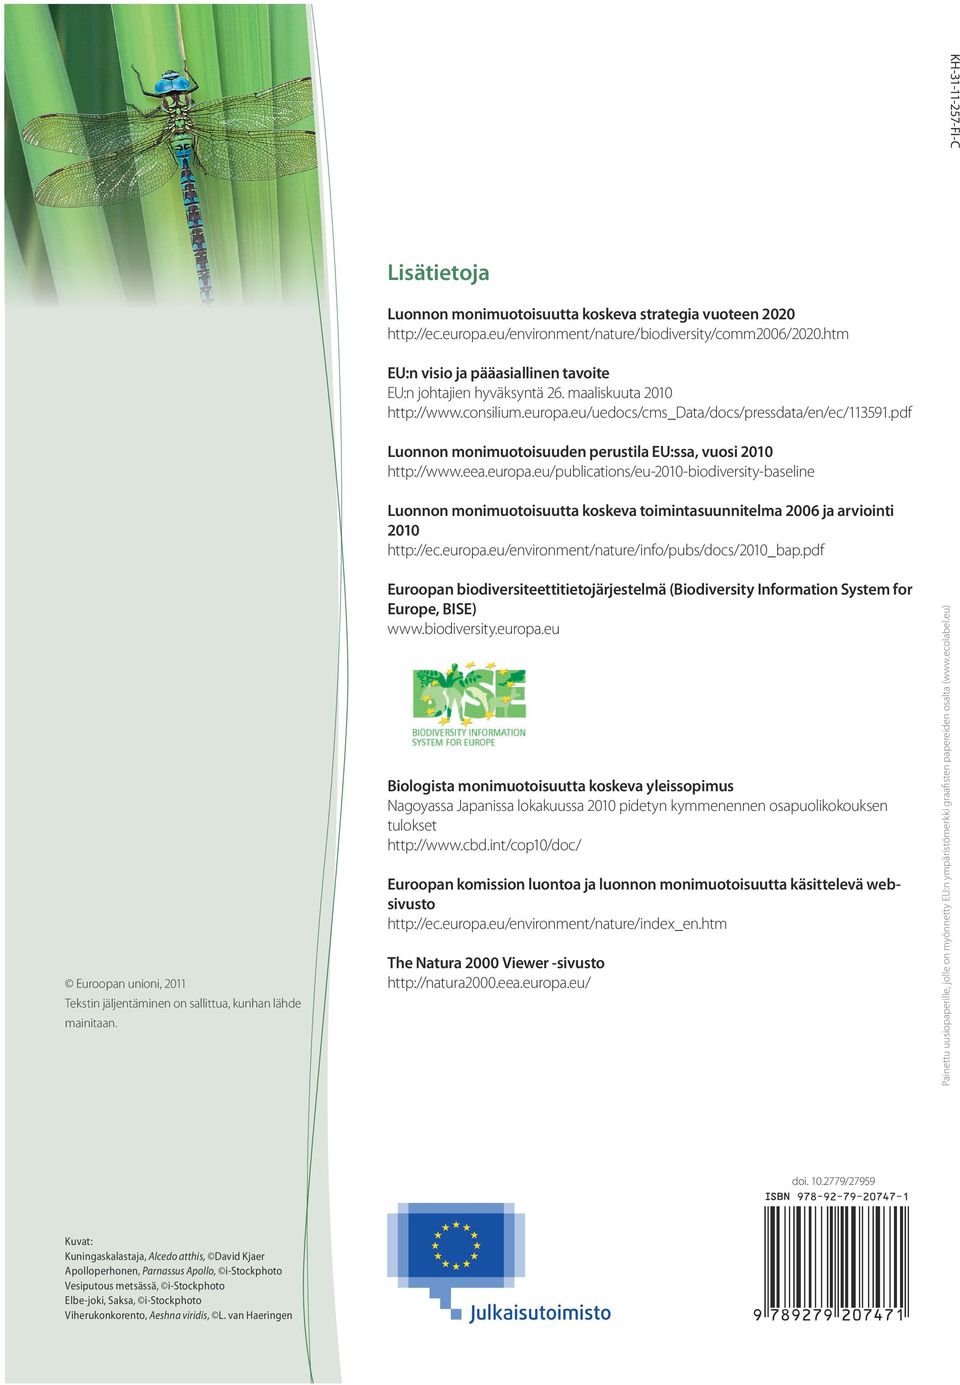 pdf Luonnon monimuotoisuuden perustila EU:ssa, vuosi 2010 http://www.eea.europa.